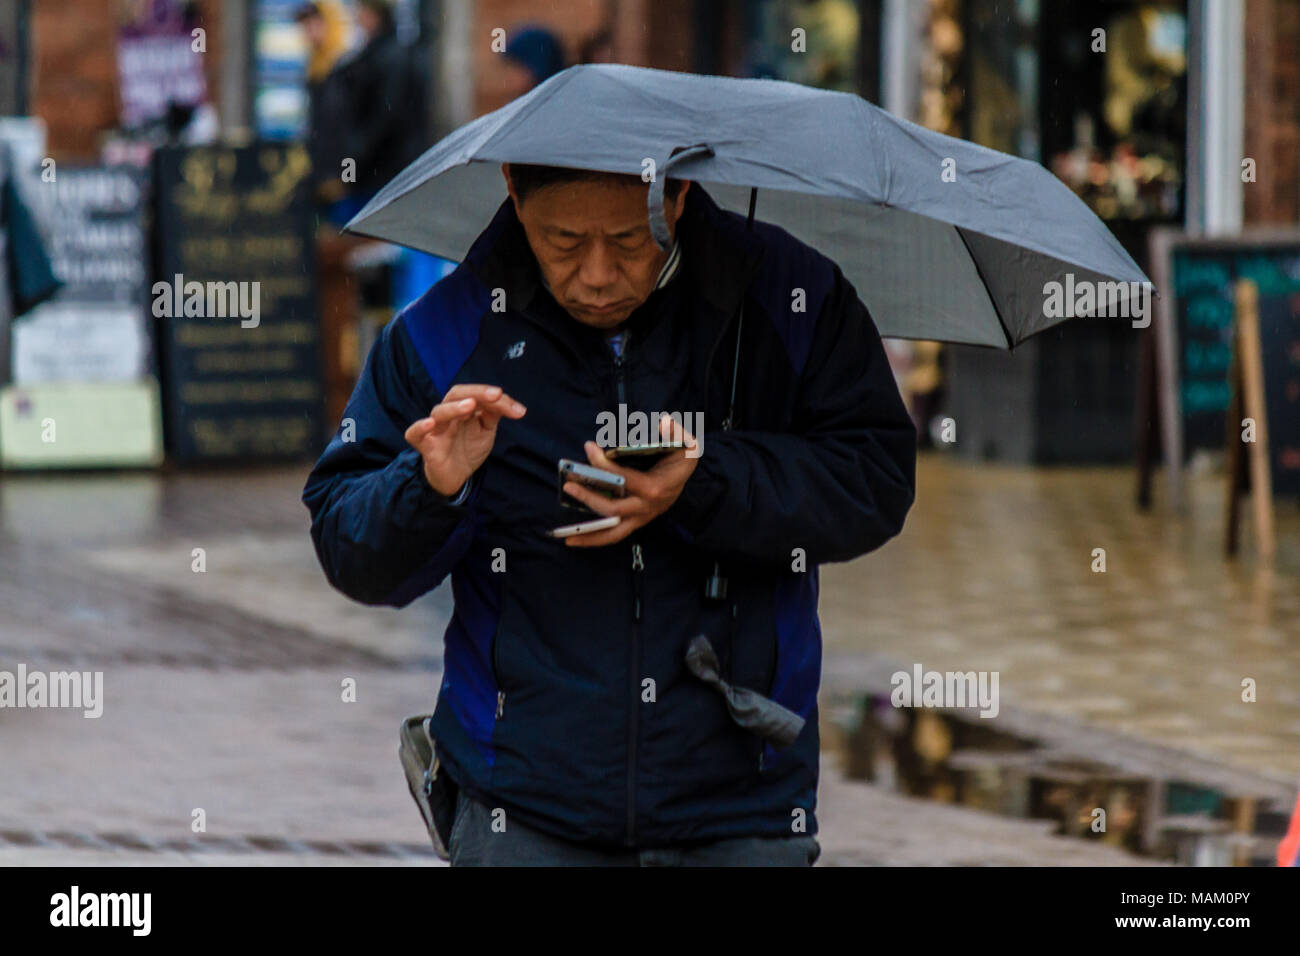 Mann mit Schirm mit Phone im regnerischen Wetter in Stratford-upon-Avon Stadtmitte, England. Stockfoto